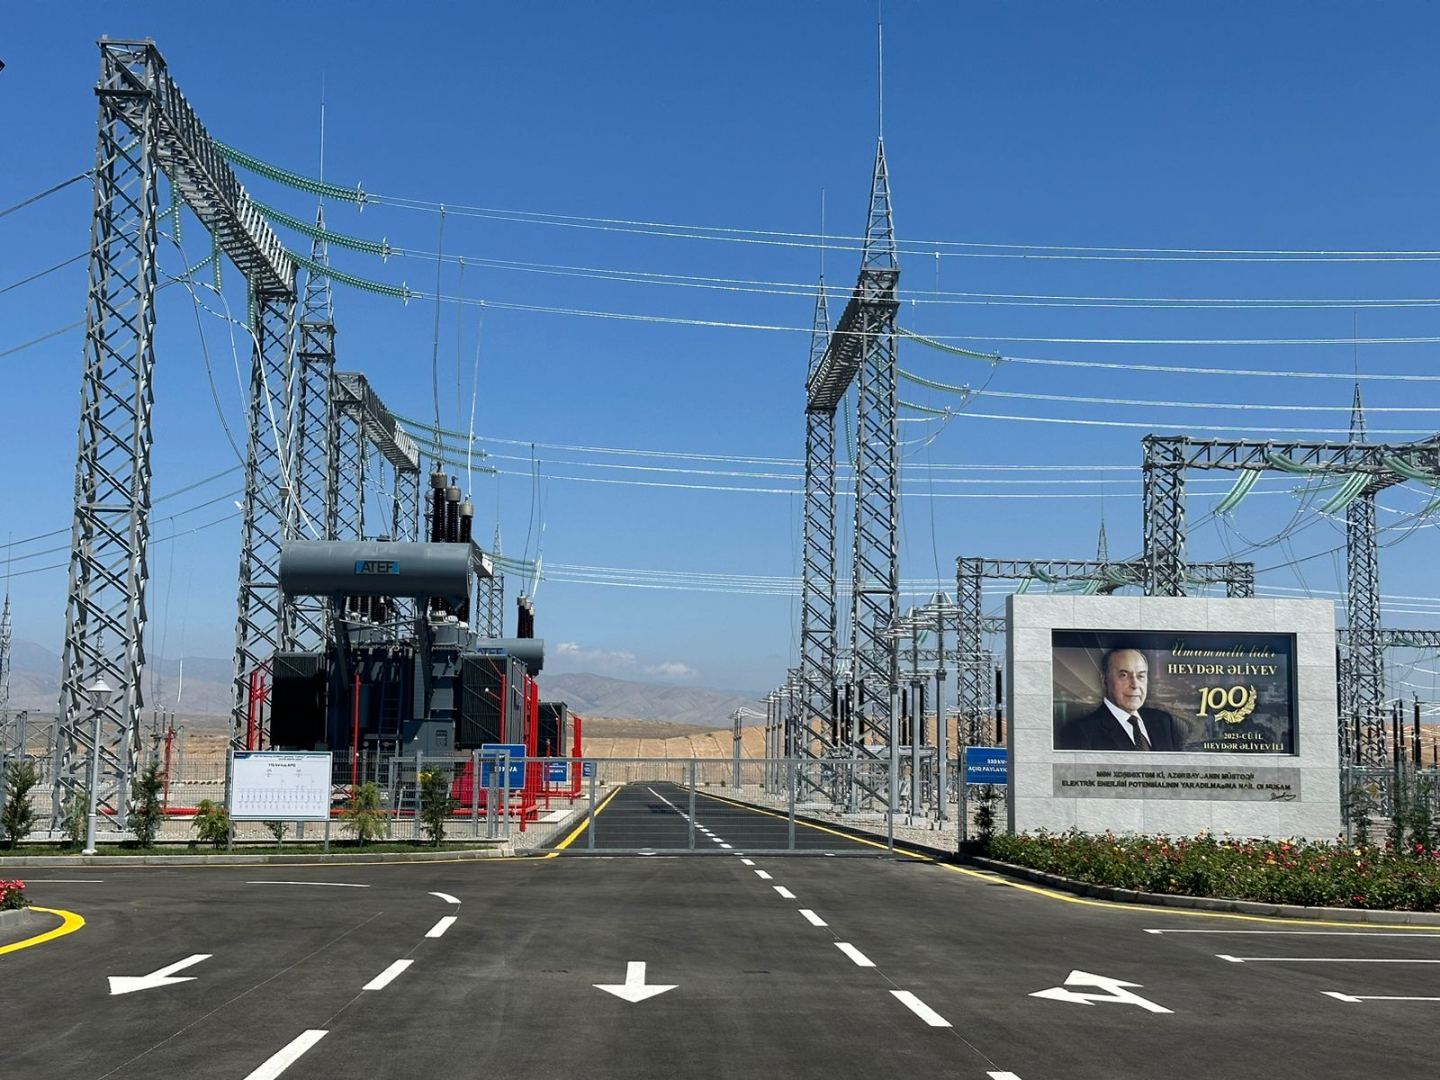 Азербайджан сможет экспортировать электроэнергию в Европу посредством узловой подстанции  "Джебраил" (ФОТО)